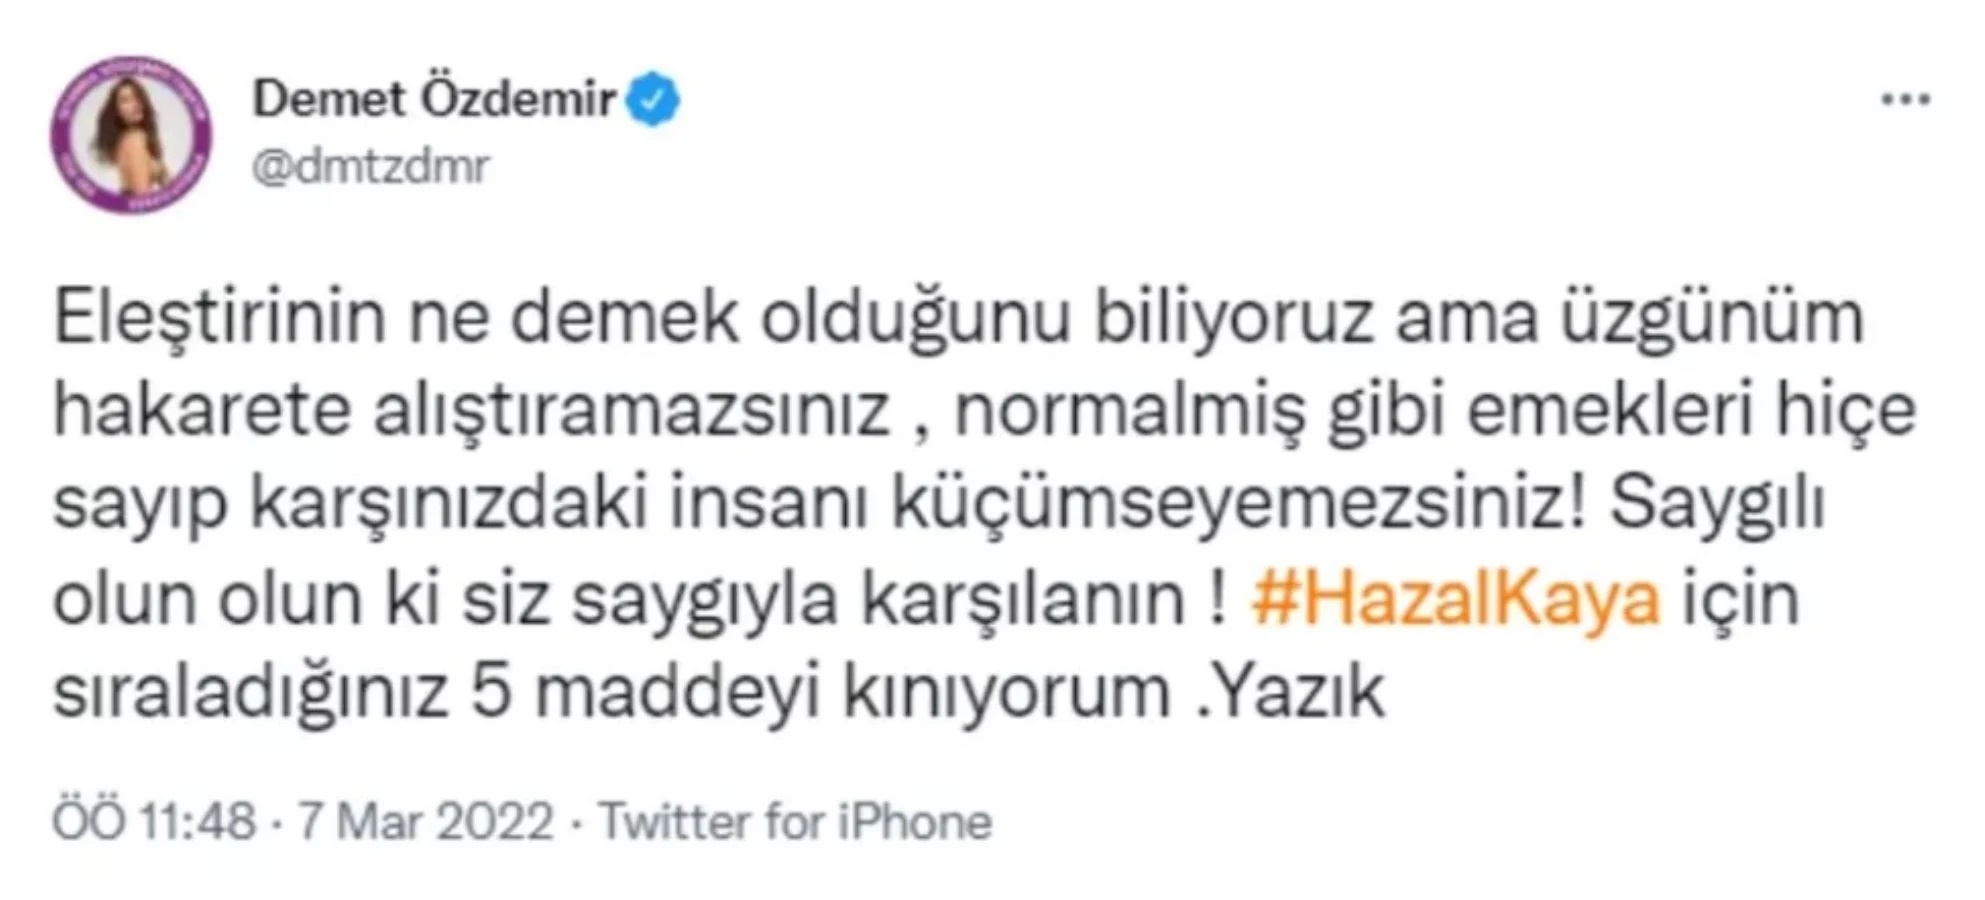 Demet Özdemir'den Ahmet Hakan'a reaksiyon: Hazal Kaya için sıraladığınız 5 maddeyi kınıyorum, yazık